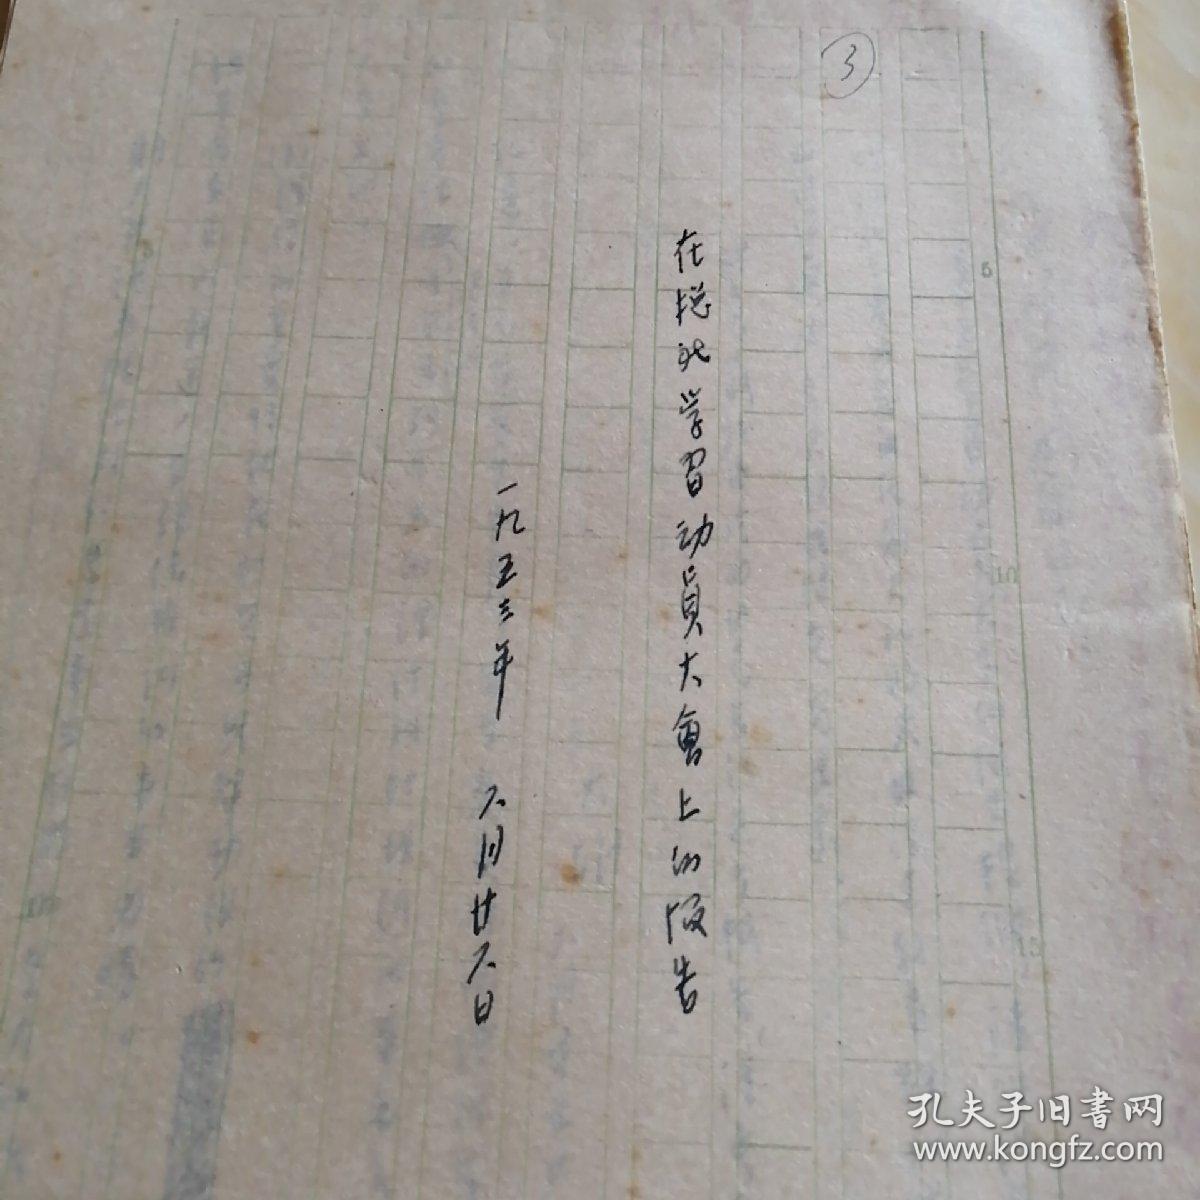 中宣部胡韦德手稿:在(新华社)总社学习动员大会上的报告。1953写共24页。并附大胡(胡韦德)便笺1页且有吴冷西红笔签名。